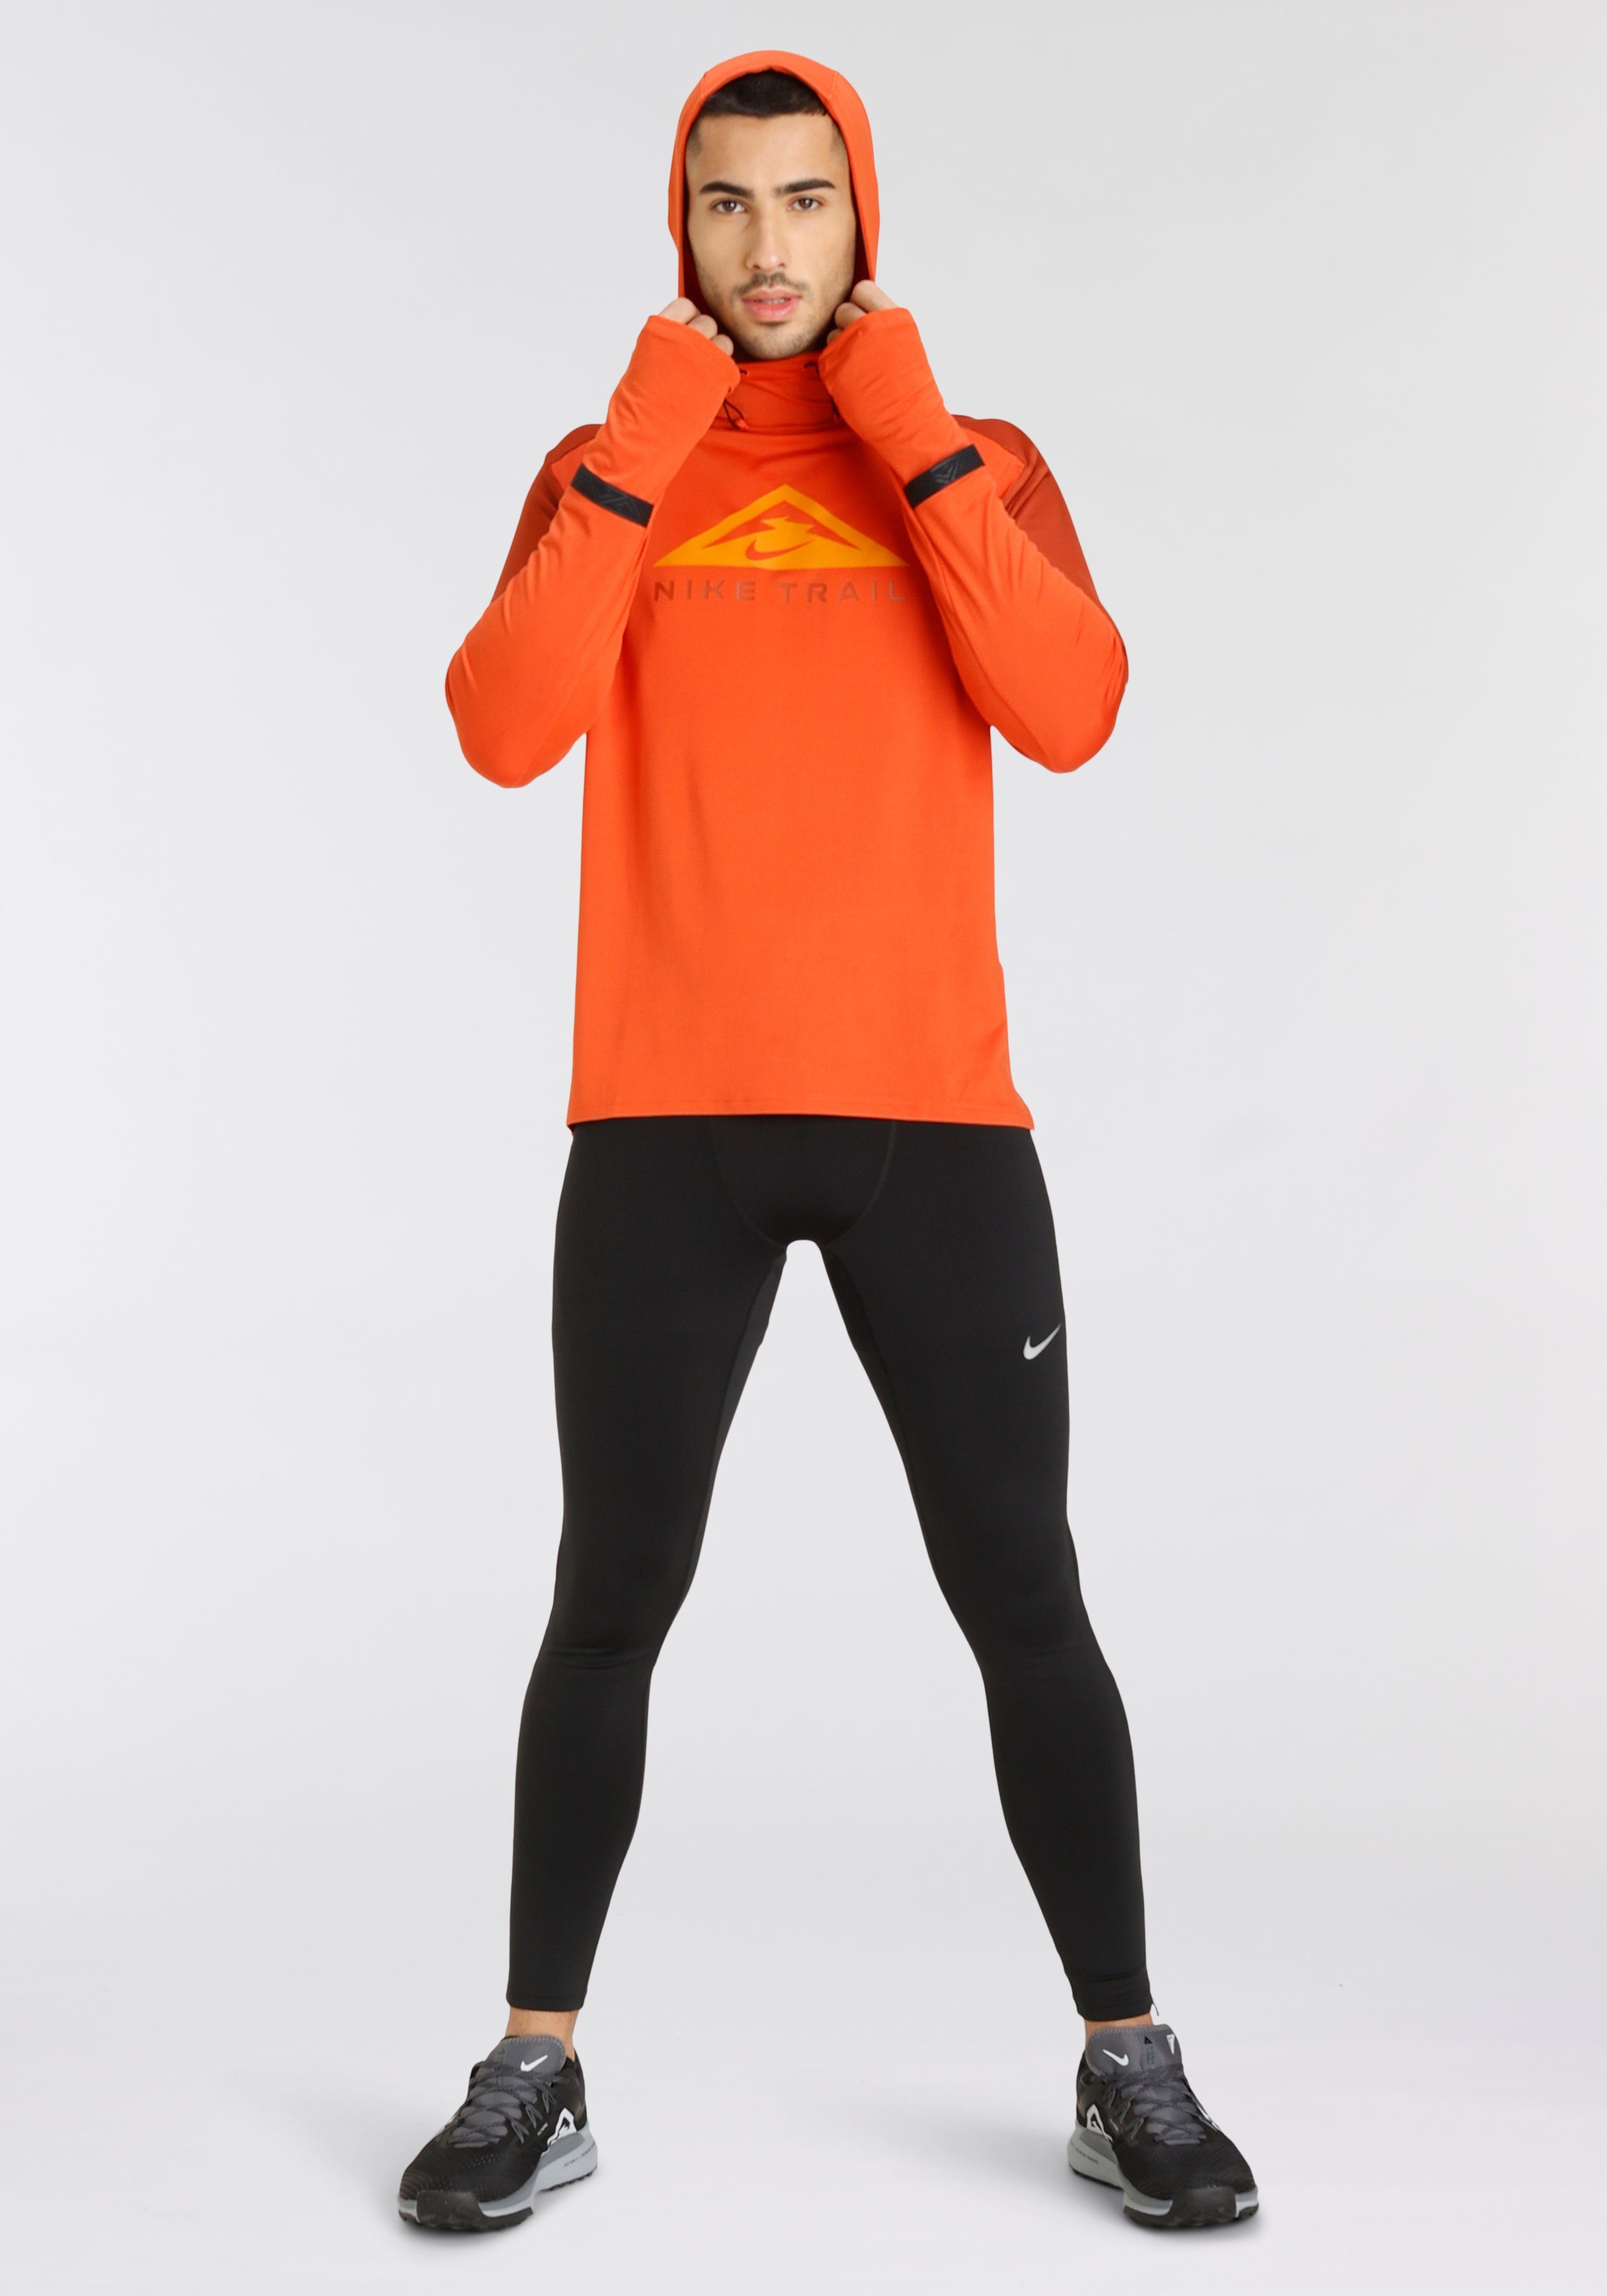 Challenger Running Dri-FIT Tights Men's Nike schwarz Lauftights